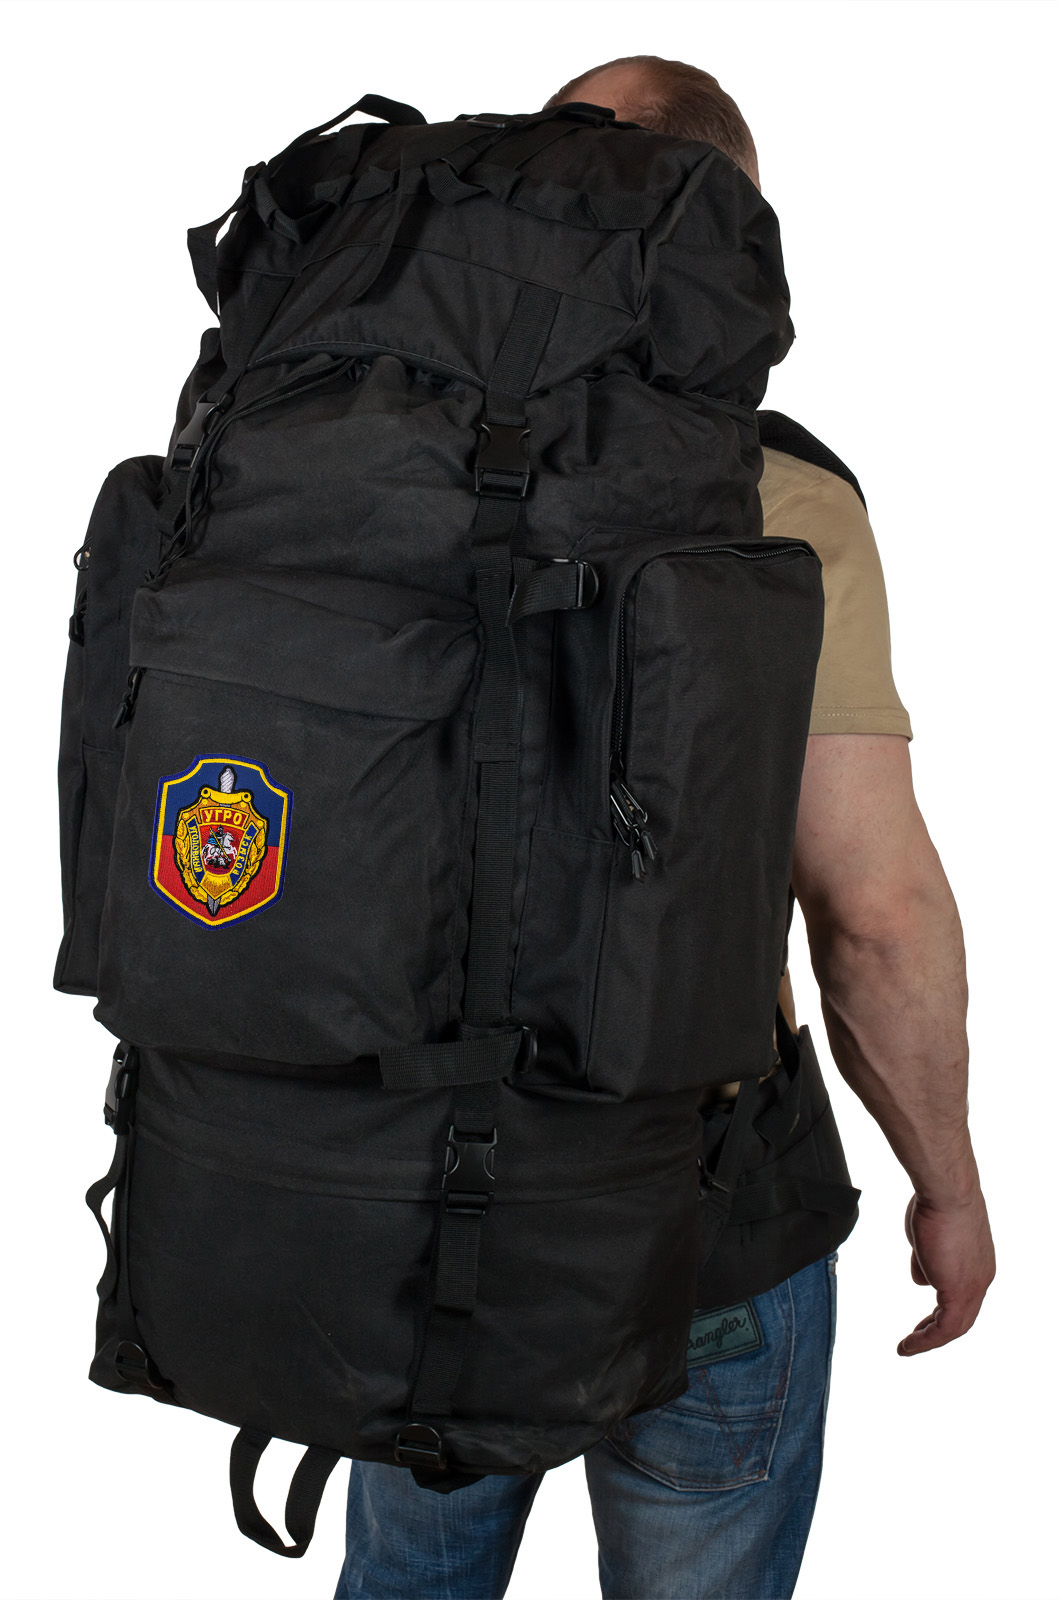 Многодневный вместительный рюкзак с нашивкой УГРО 